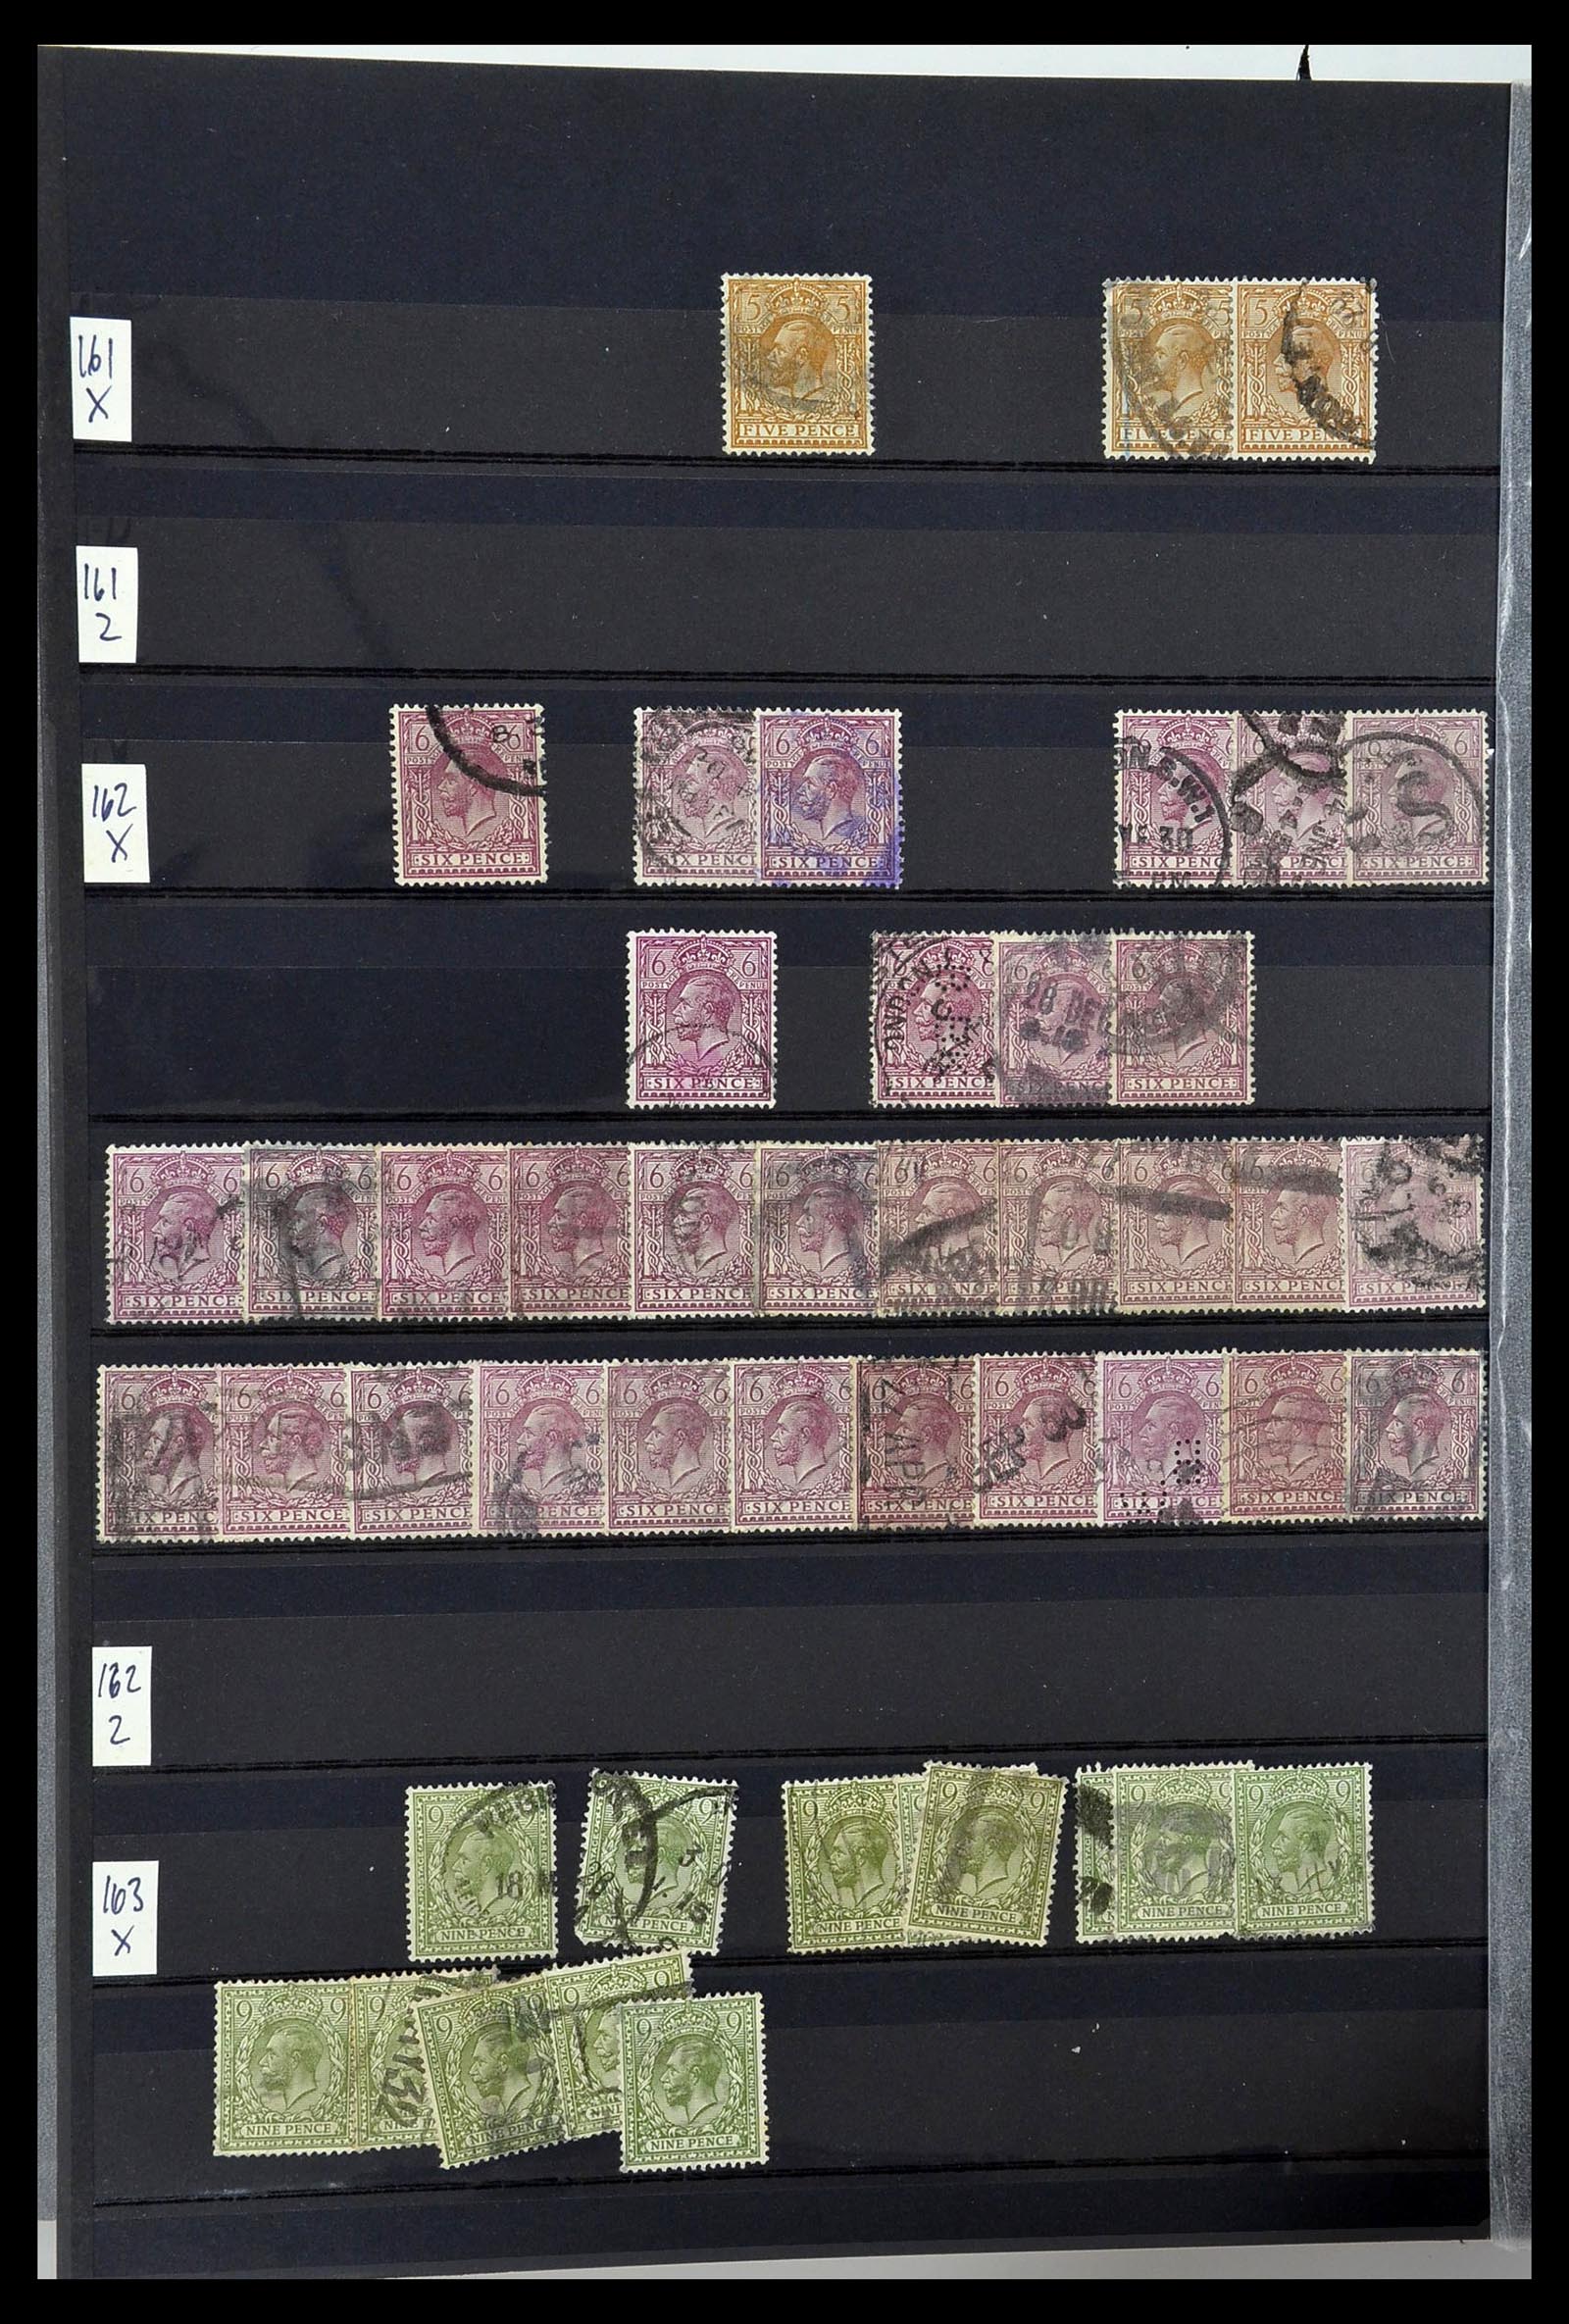 34368 025 - Postzegelverzameling 34368 Engeland uitzoekpartij 1858-1990.